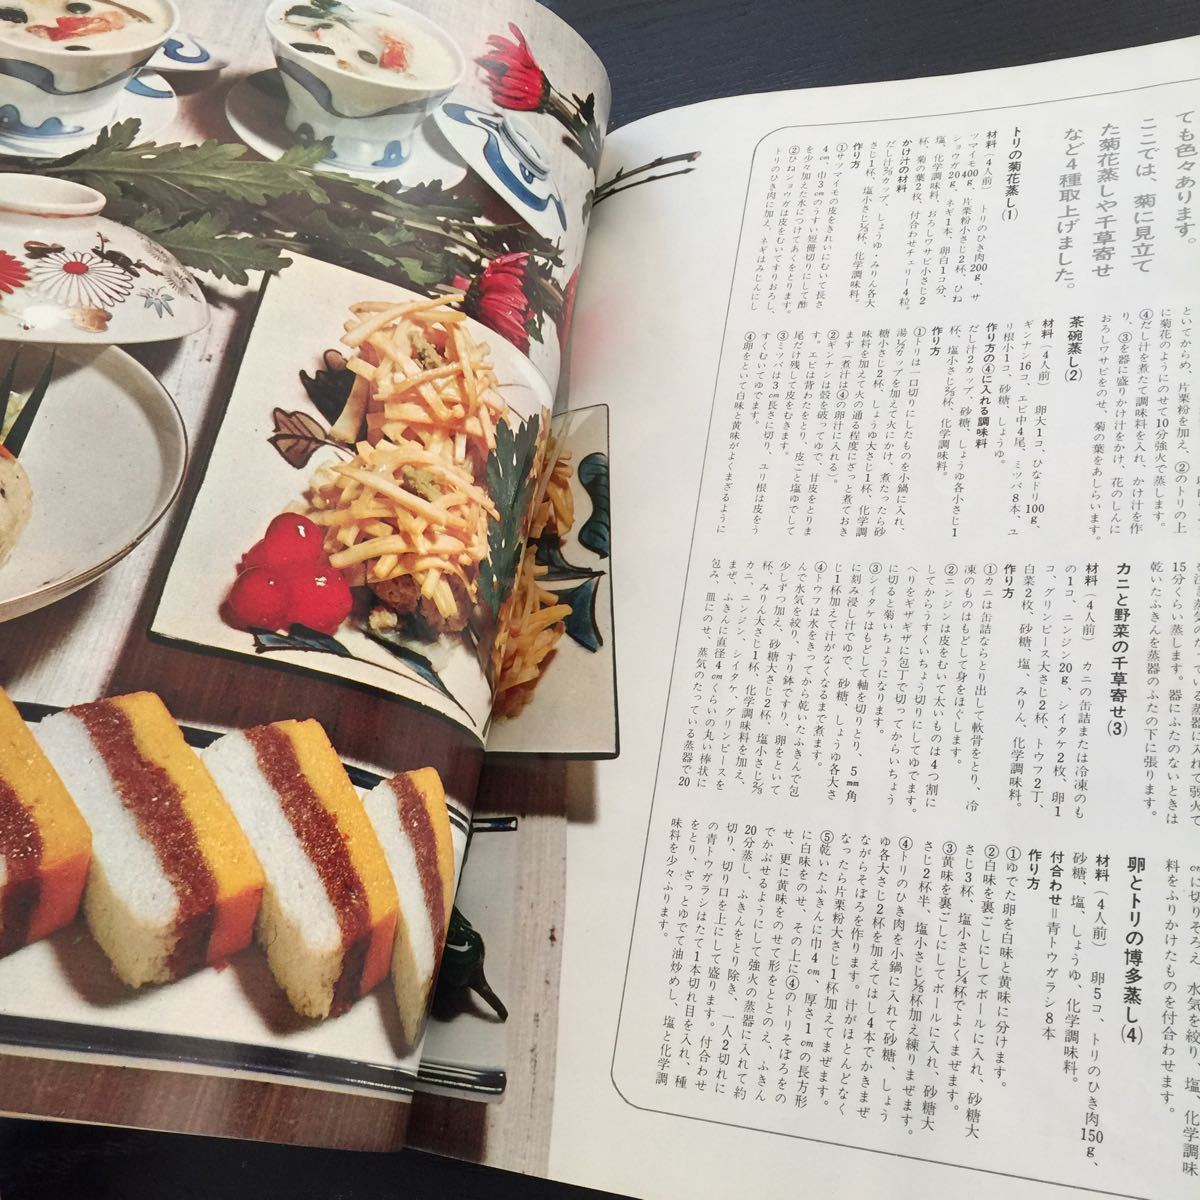 ku85 семья все . Showa 44 год 11 месяц номер модный журнал жизнь жизнь Mrs. retro рецепт вышивка вязание рукоделие ko-tine-to модный женщина кулинария 